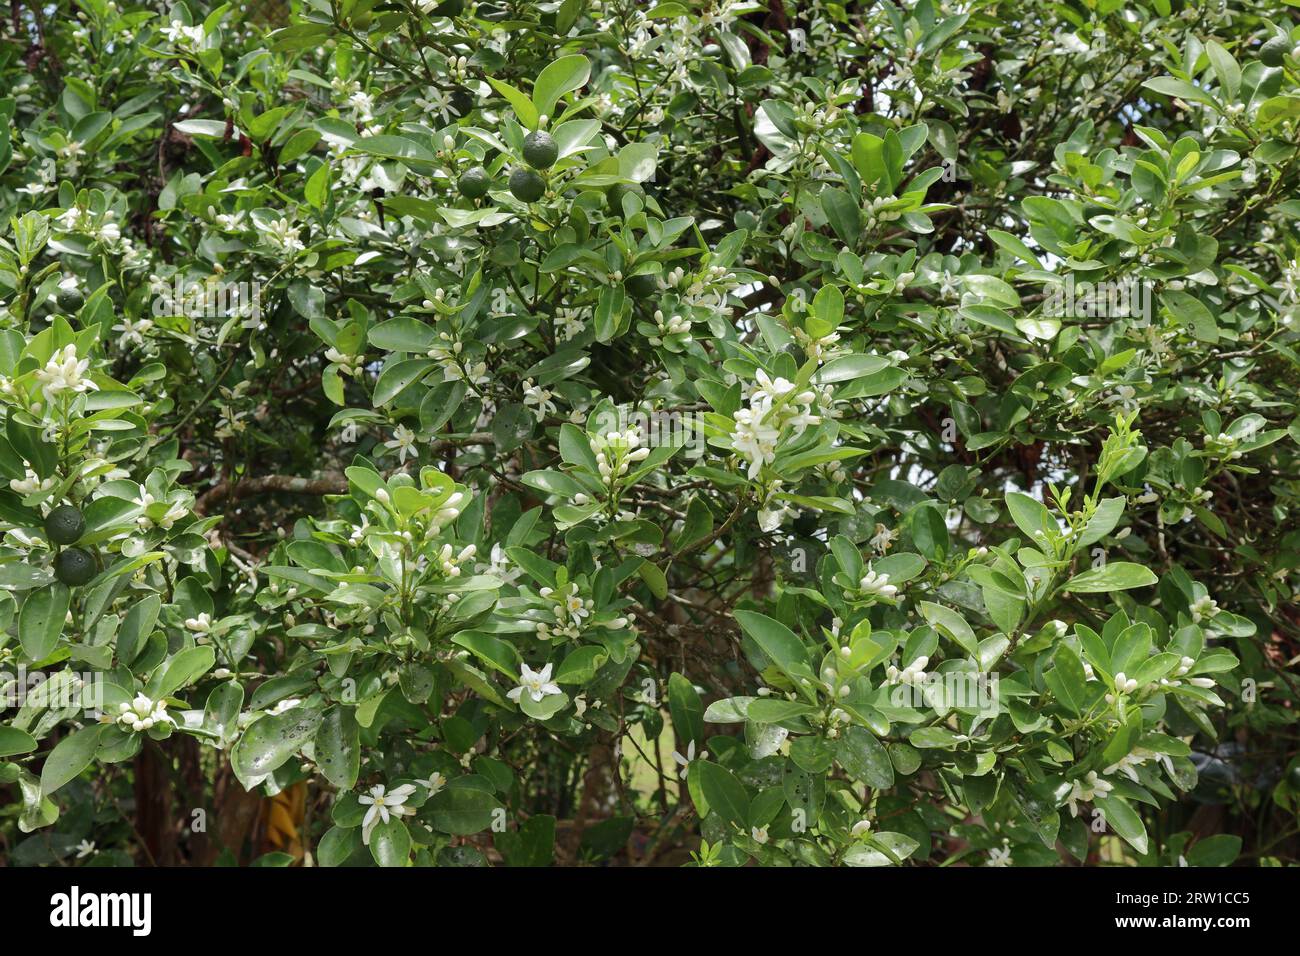 Vista de una planta de cítricos en flor con los frutos inmaduros y flores blancas con las hojas. Esta fruta de sabor amargo que lleva la planta de cítricos conocida como t Foto de stock